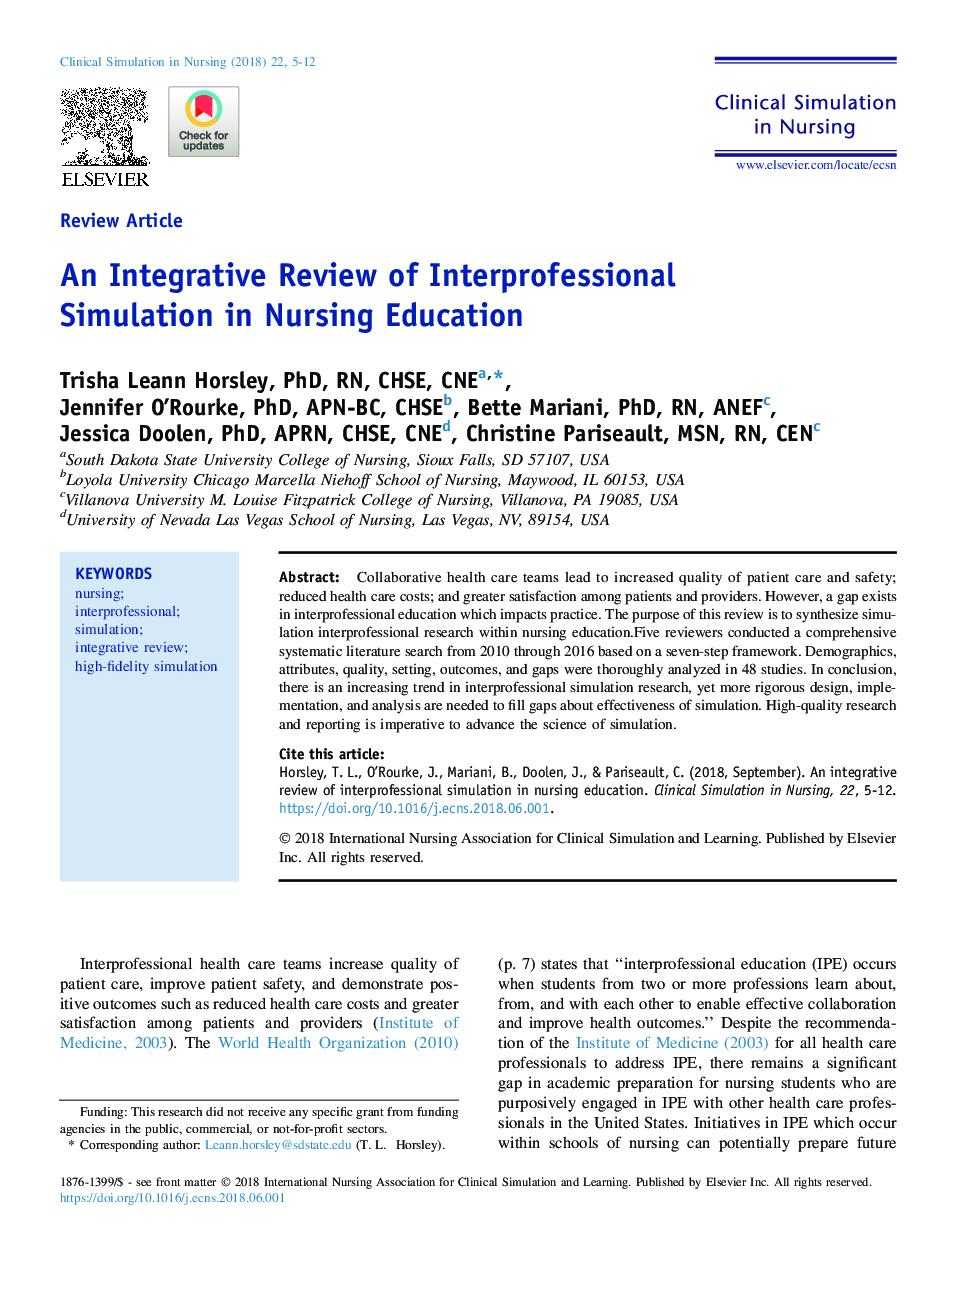 بررسی یکپارچه سازی شبیه سازی بین حرفه ای در آموزش پرستاری 